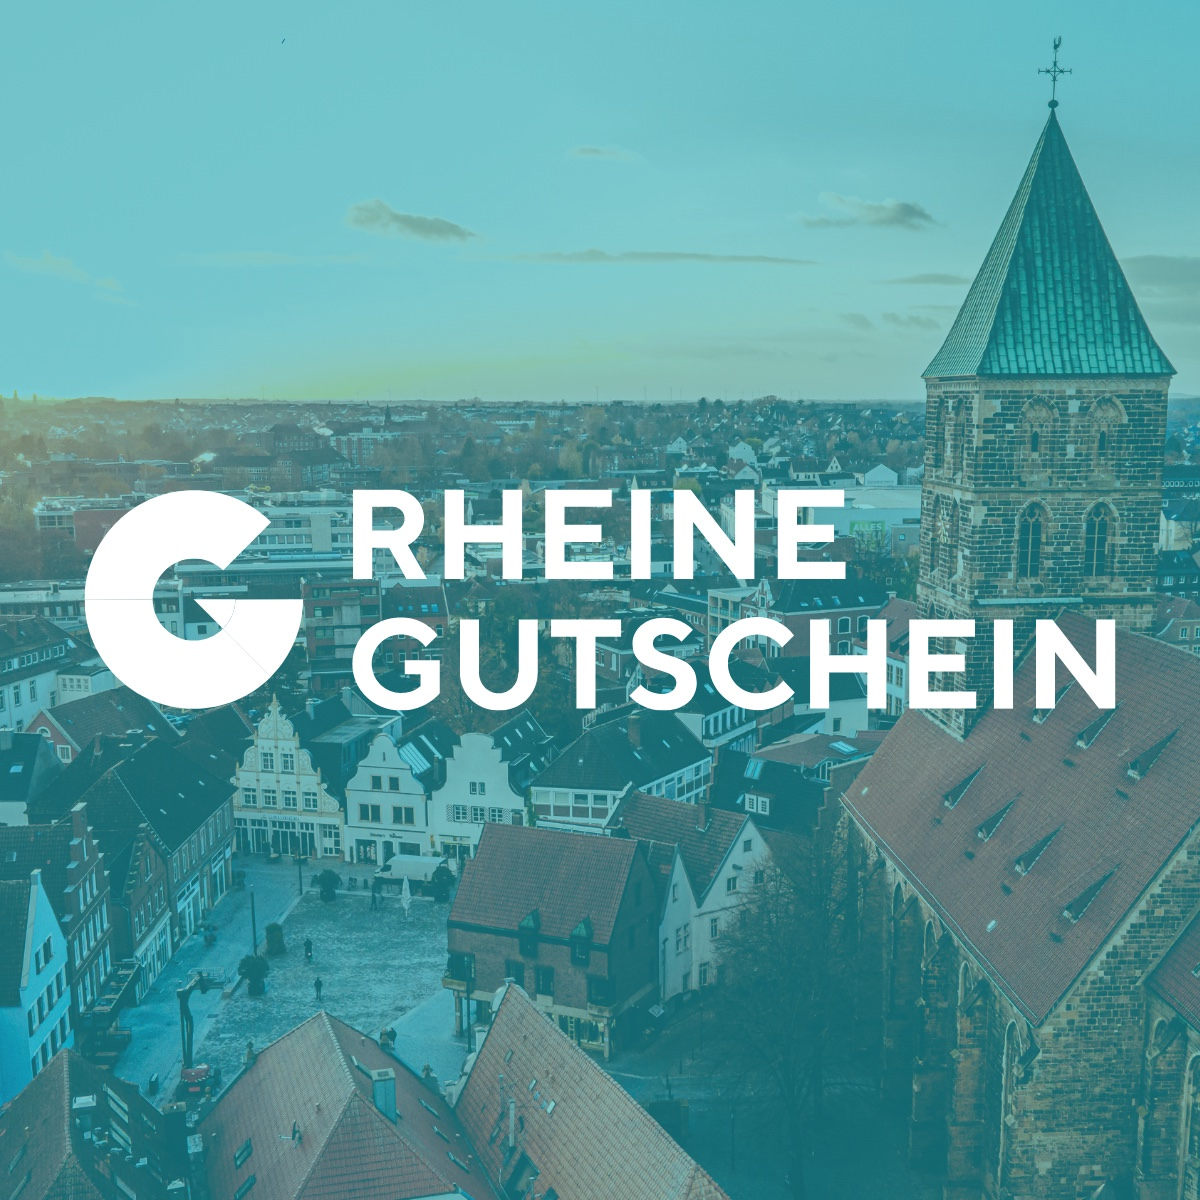 (c) Rheine-gutschein.de